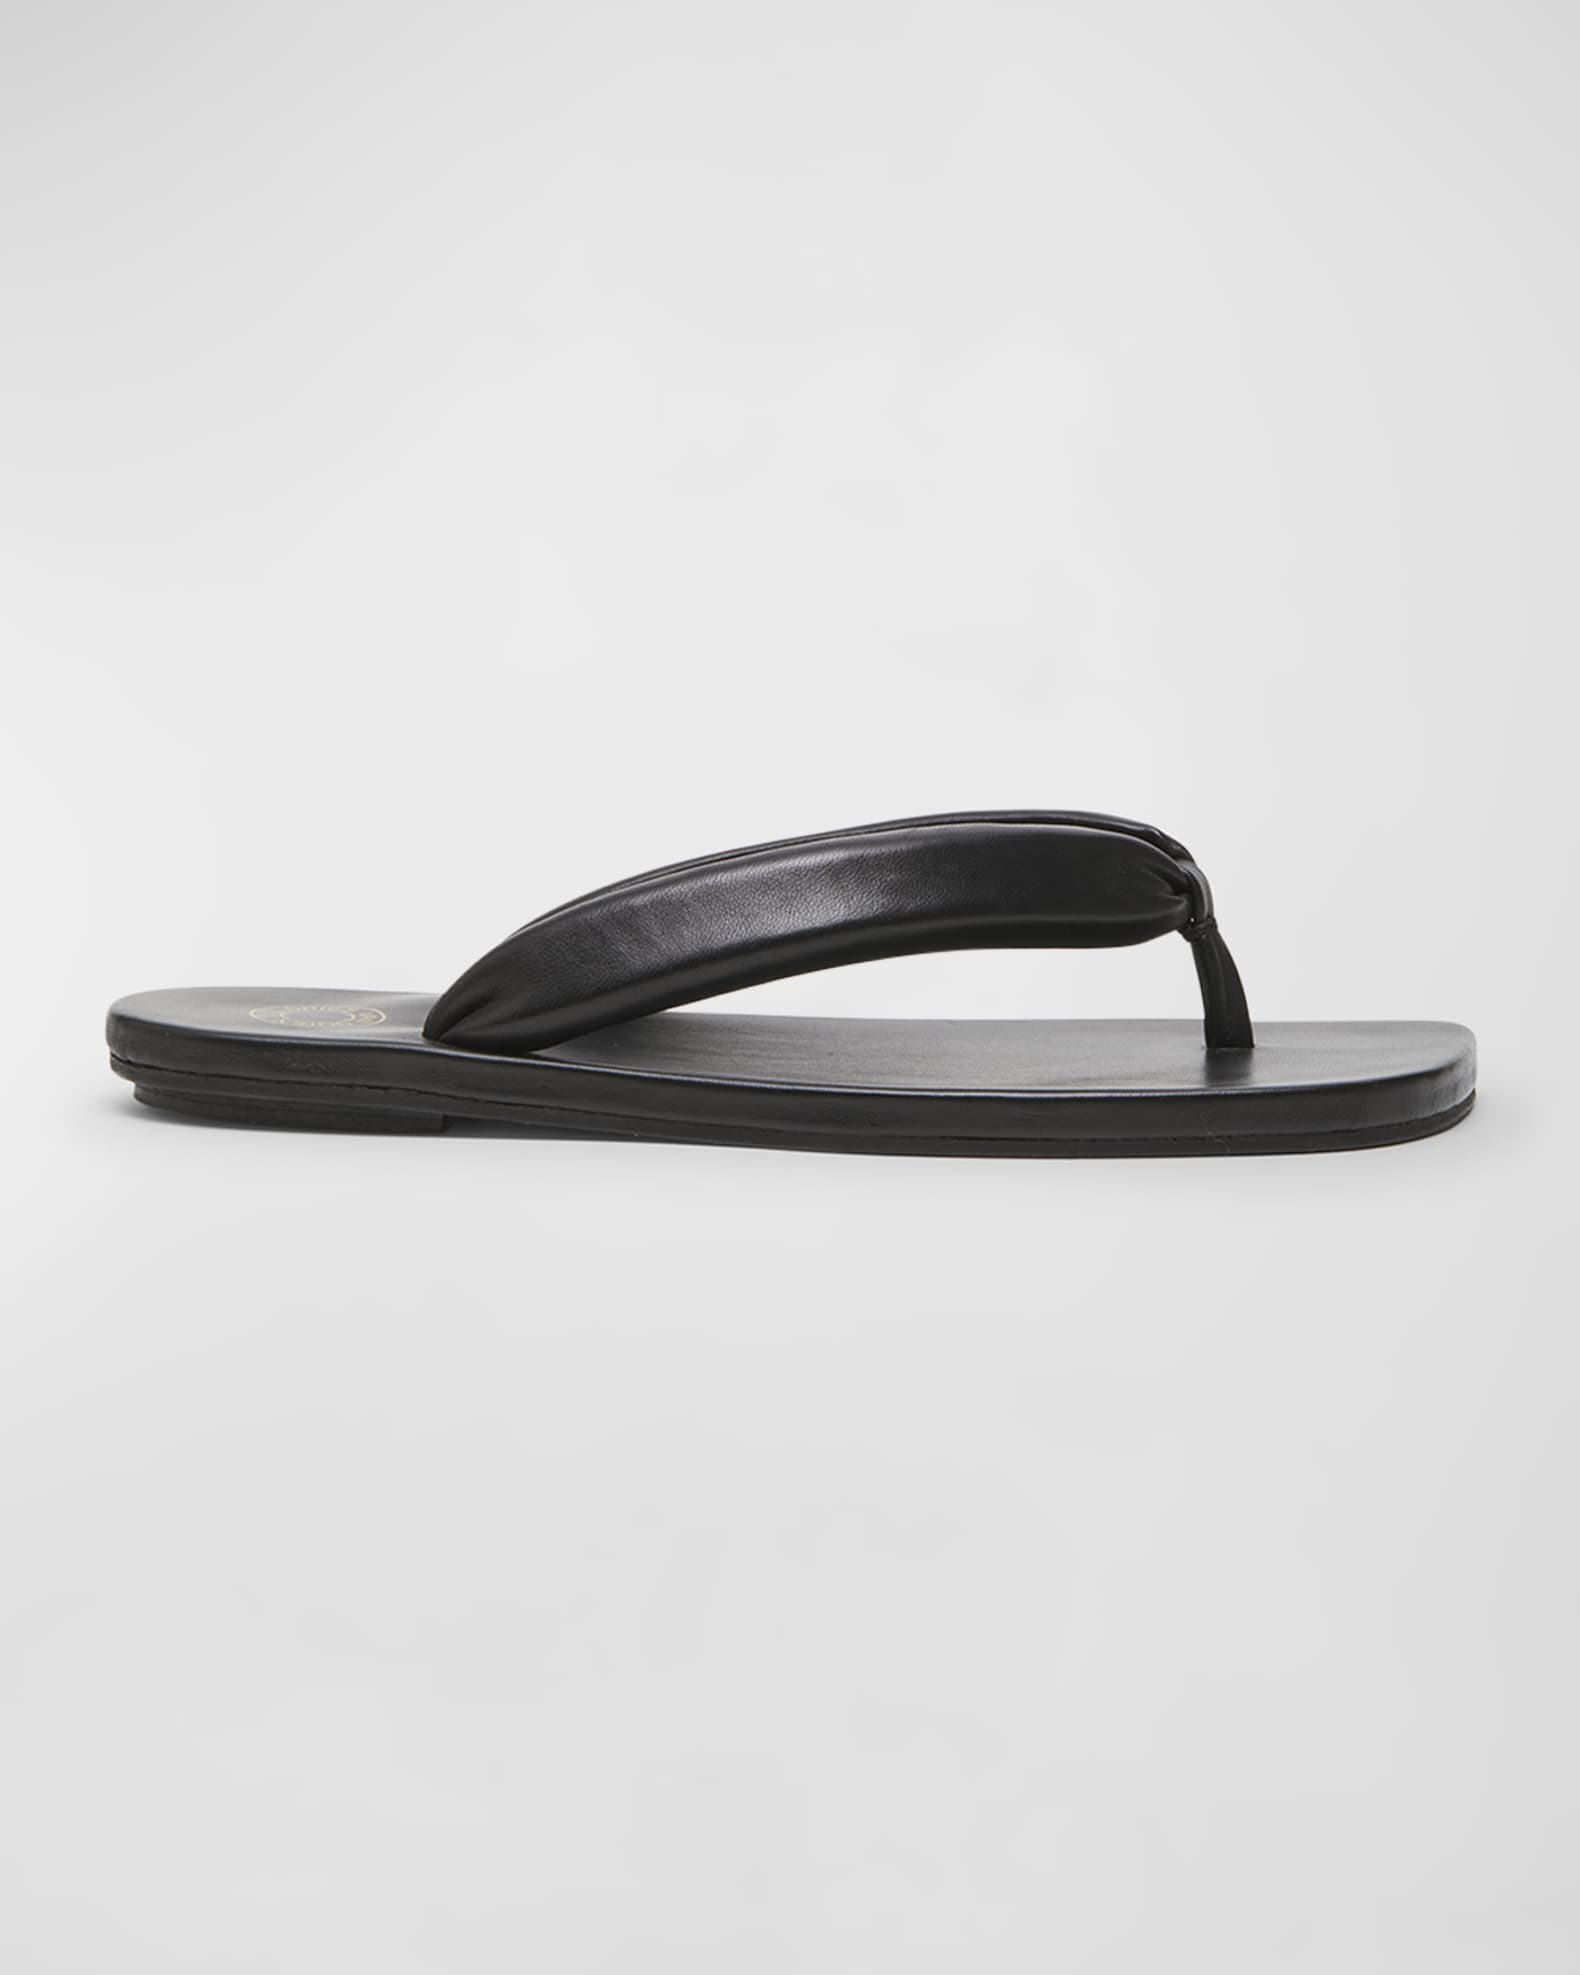 Dries Van Noten Men's Padded Leather Flip Flops | Neiman Marcus